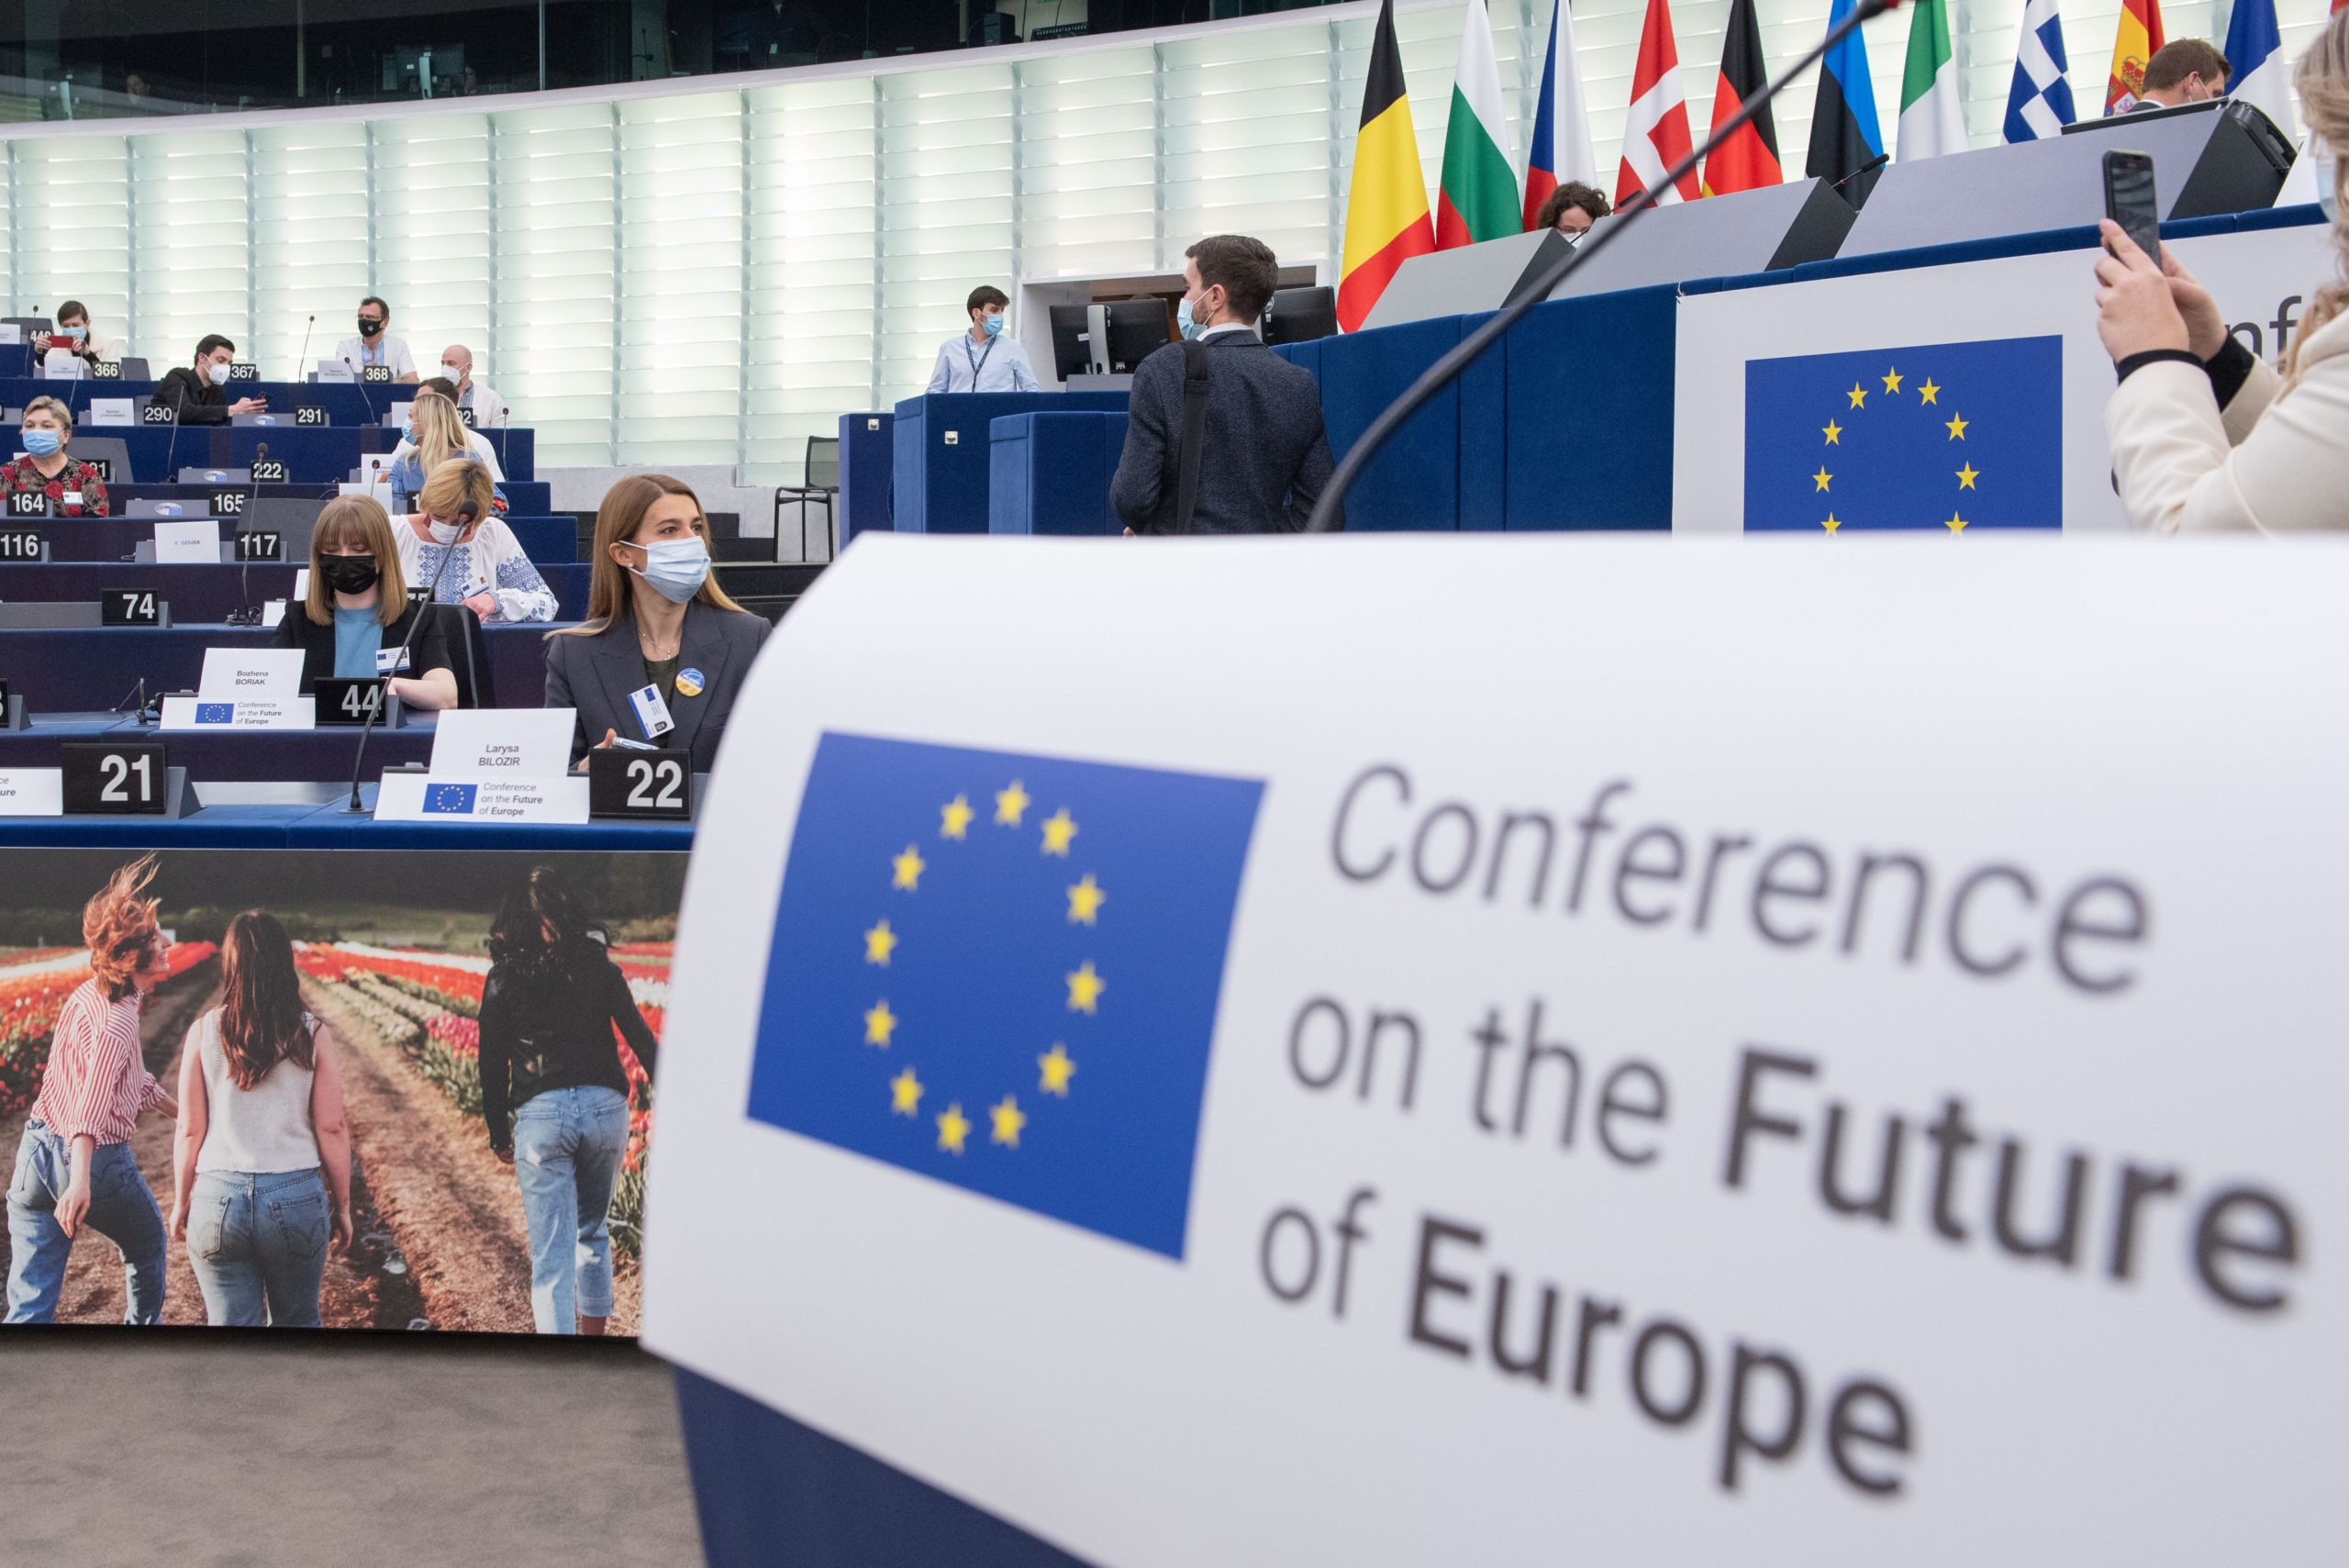 Διάσκεψη για το Μέλλον της Ευρώπης: Αναγκαία η αναθεώρηση των Συνθηκών βάσει των προτάσεων